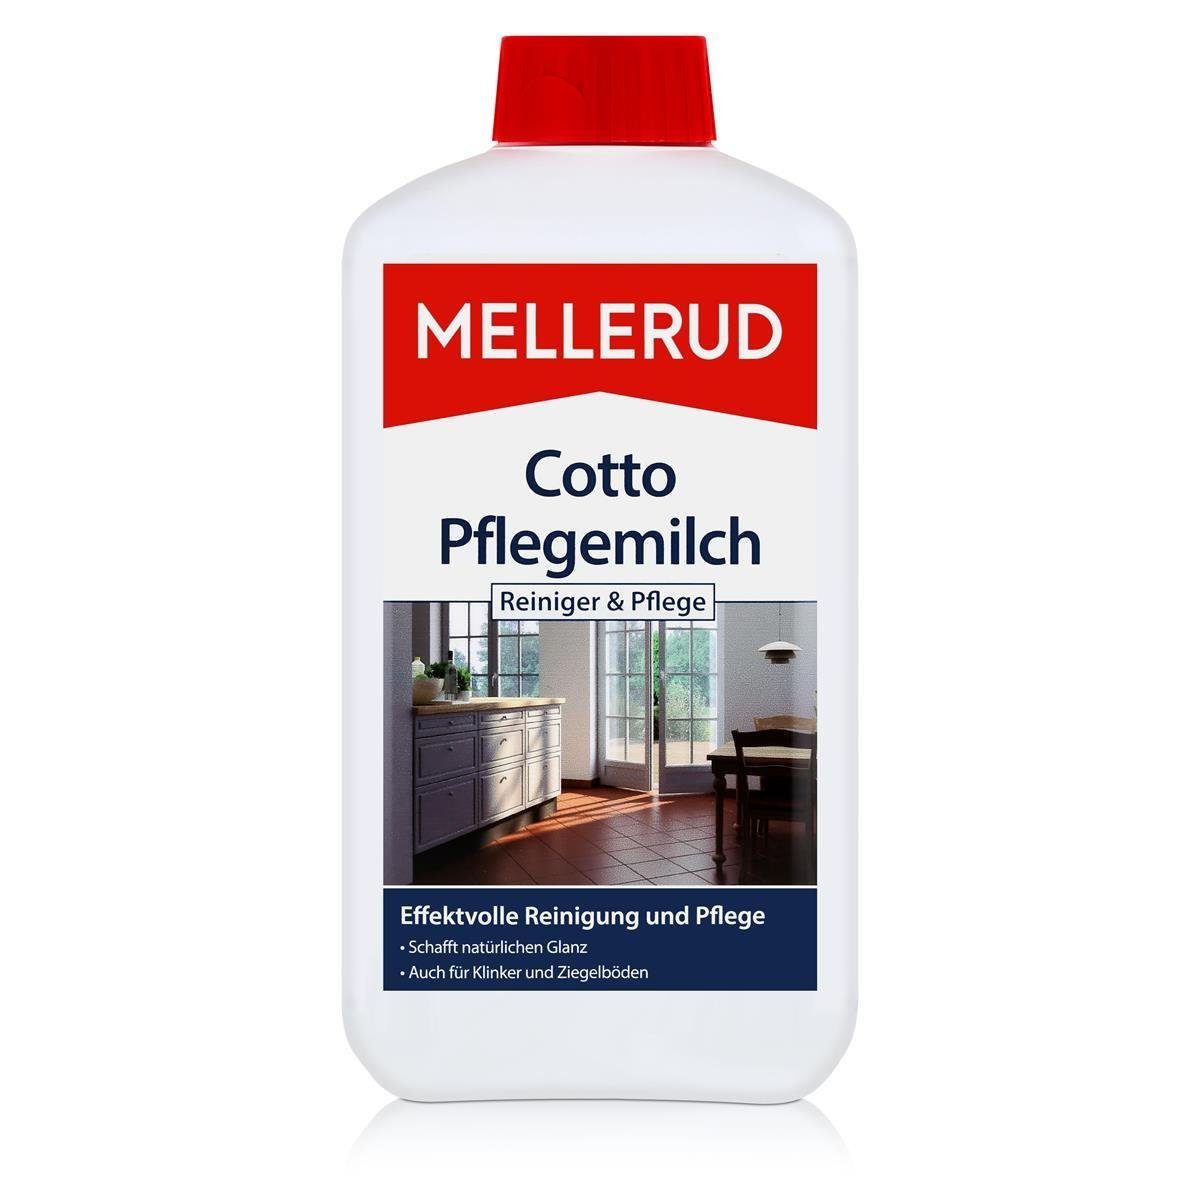 Mellerud Mellerud Cotto Pflegemilch 1L - Schutz und Glanz Spezialwaschmittel